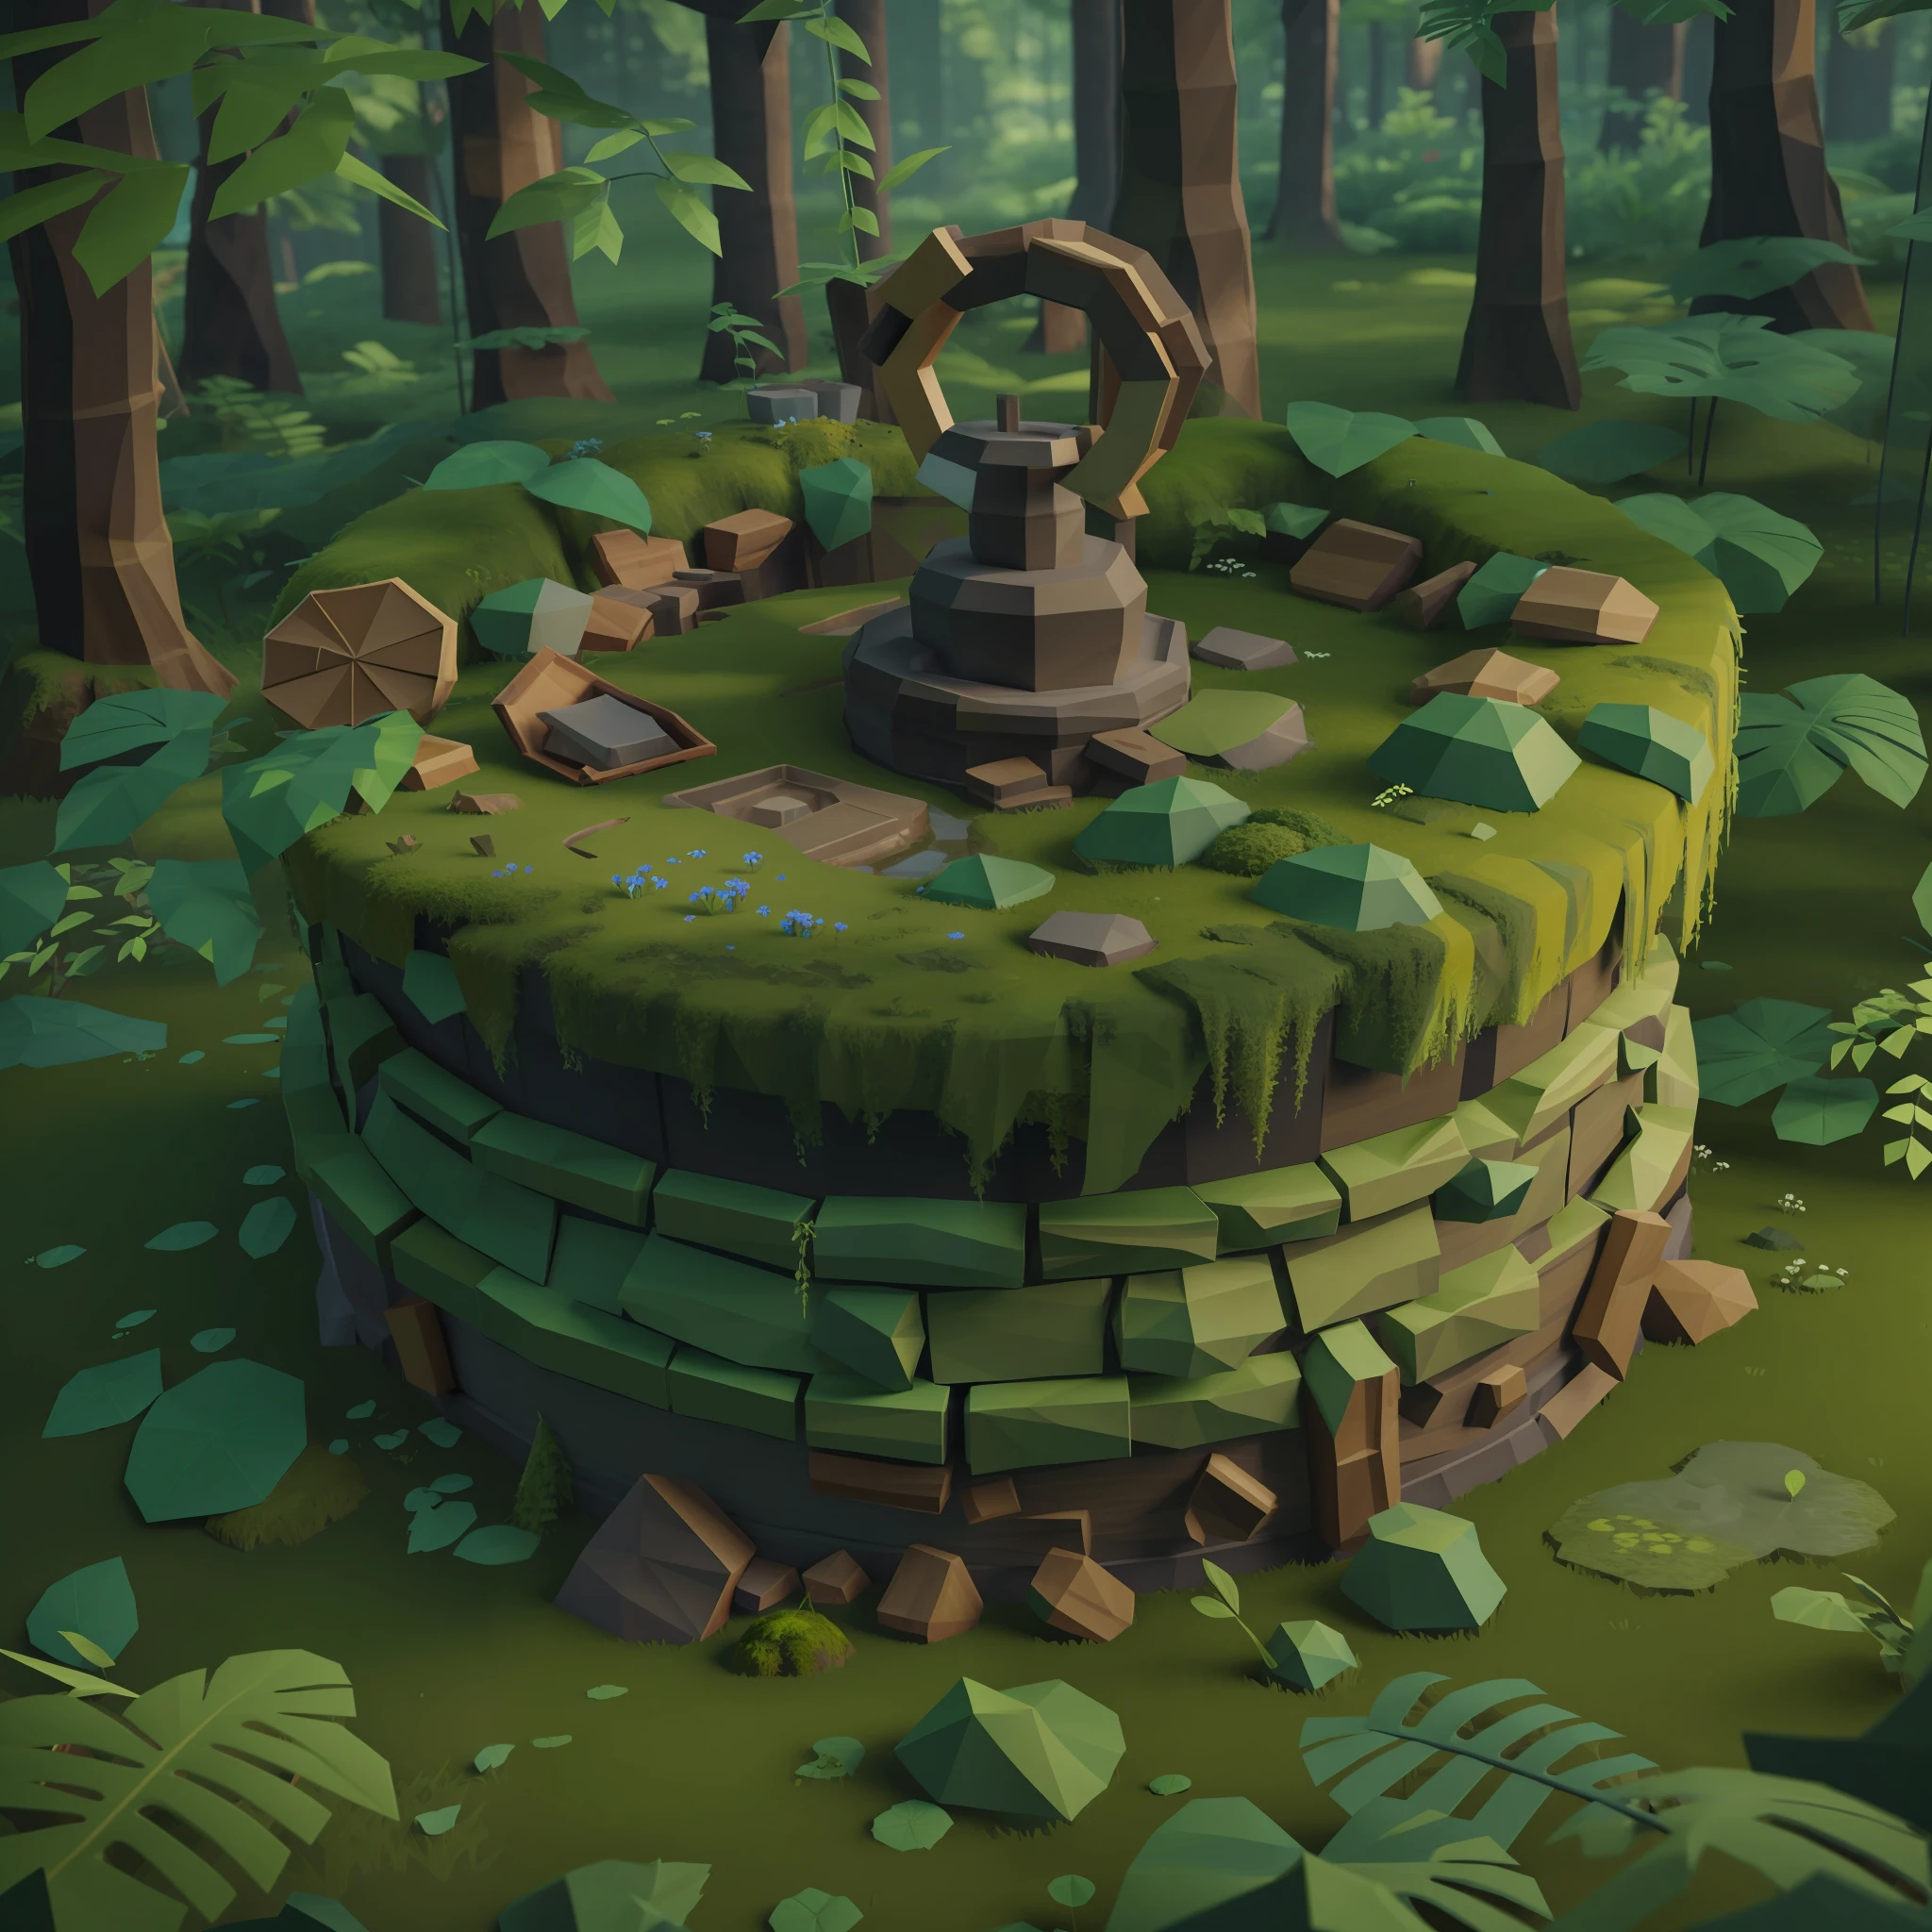 Alter handgefertigter Brunnen mit Moos bedeckt mitten in einem Wald, 3D-Lowpoly-Stil, Niedrige Poly, PS1-Spielstil, UHD, hohe Details, beste Qualität, highres, 8k